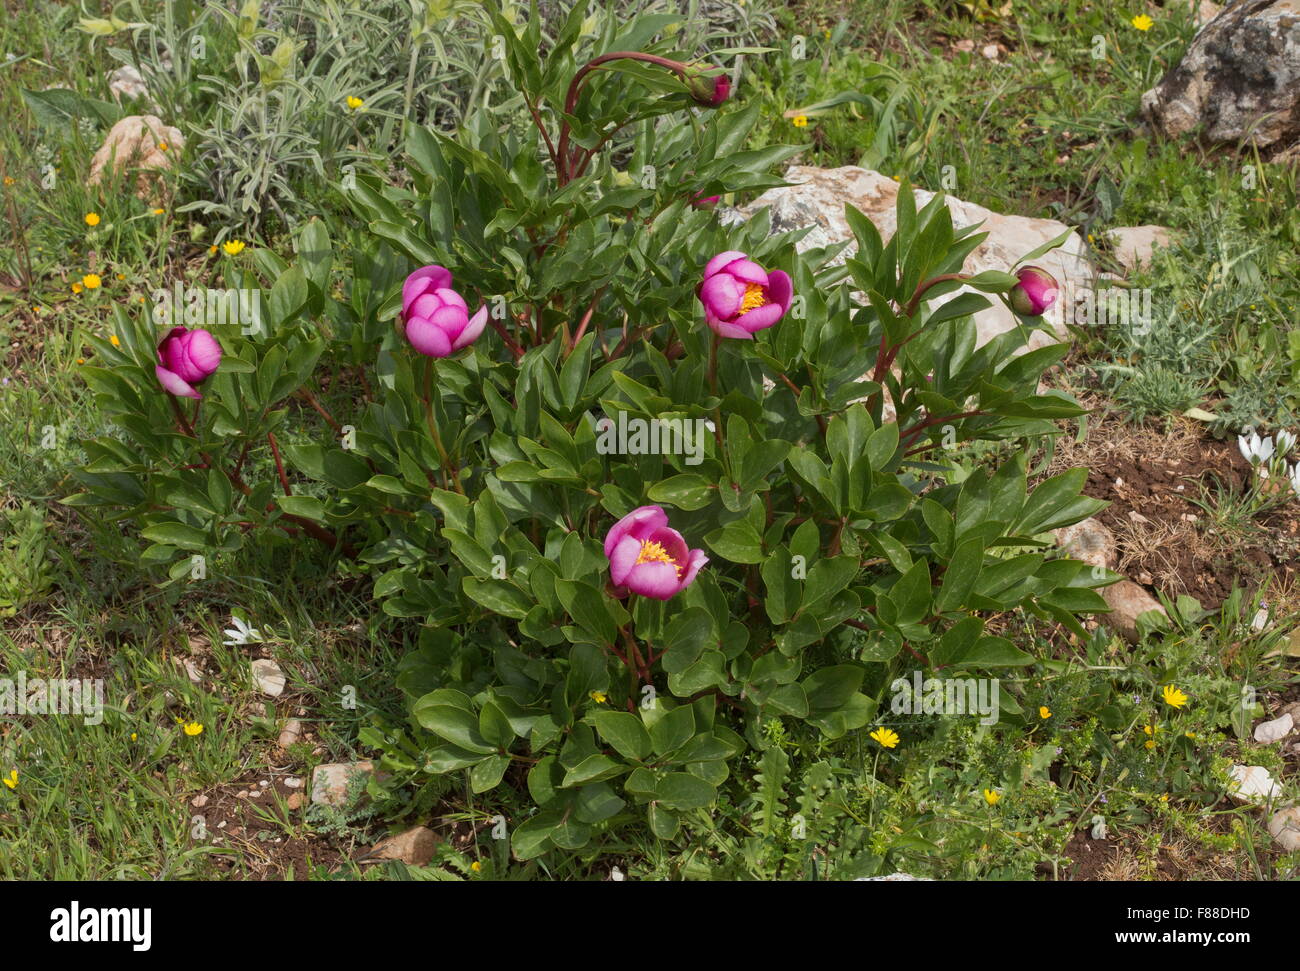 Paeonia broteri, Paeonia broteroi, Western peony, paeony Stock Photo